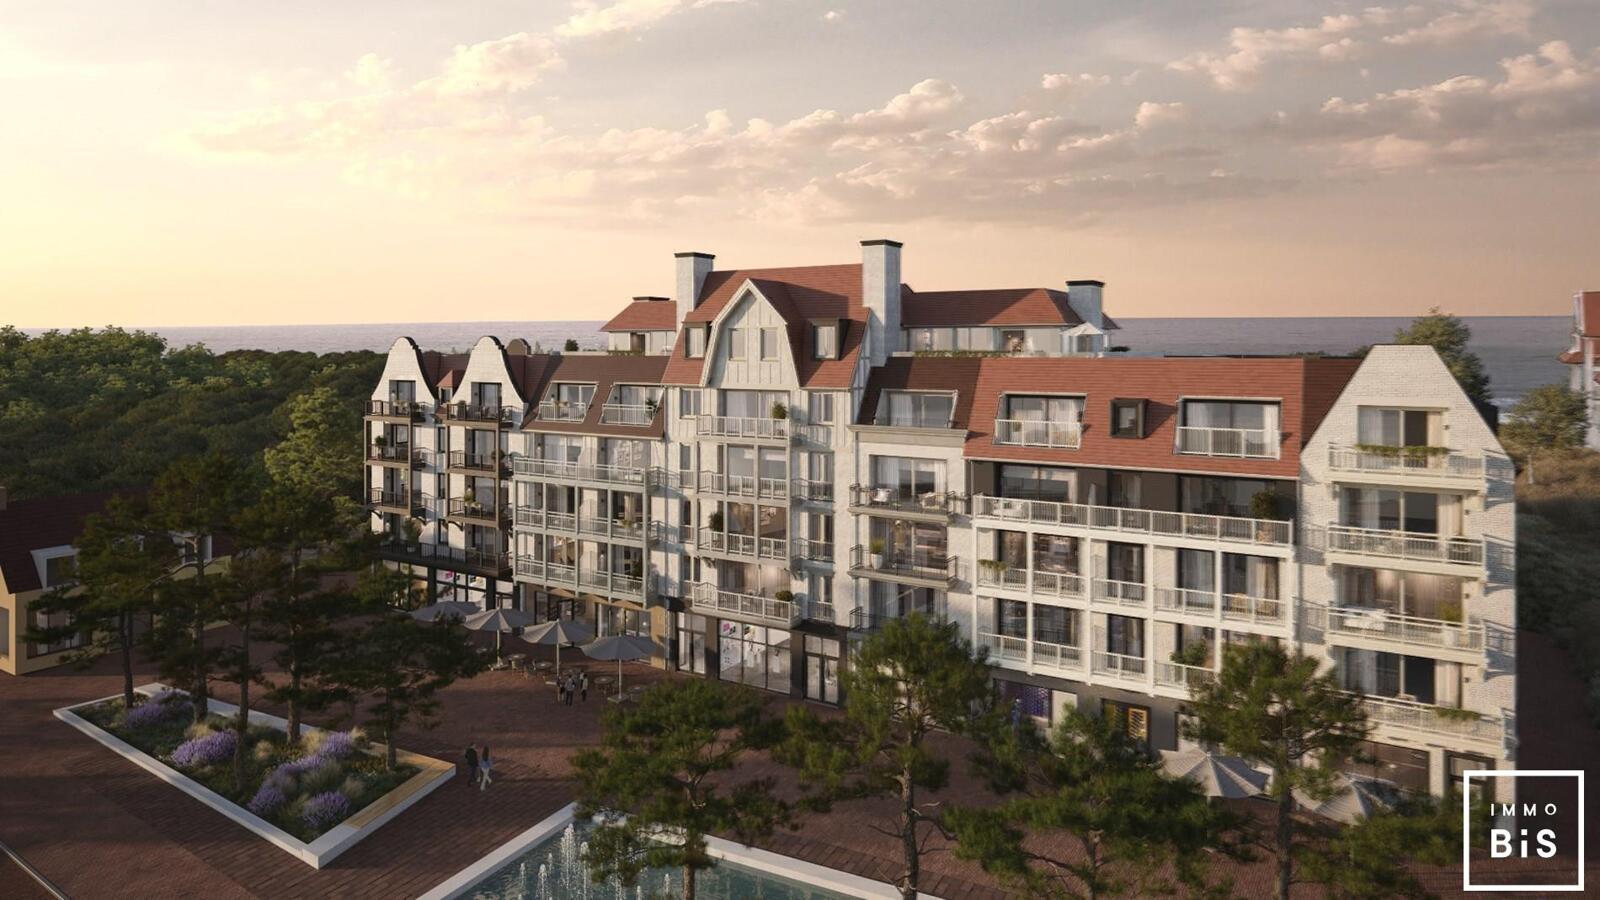 " Appartement villa moderne avec terrasse sur la Digue à Cadzand - Résidence Duinhof-Noord " 6